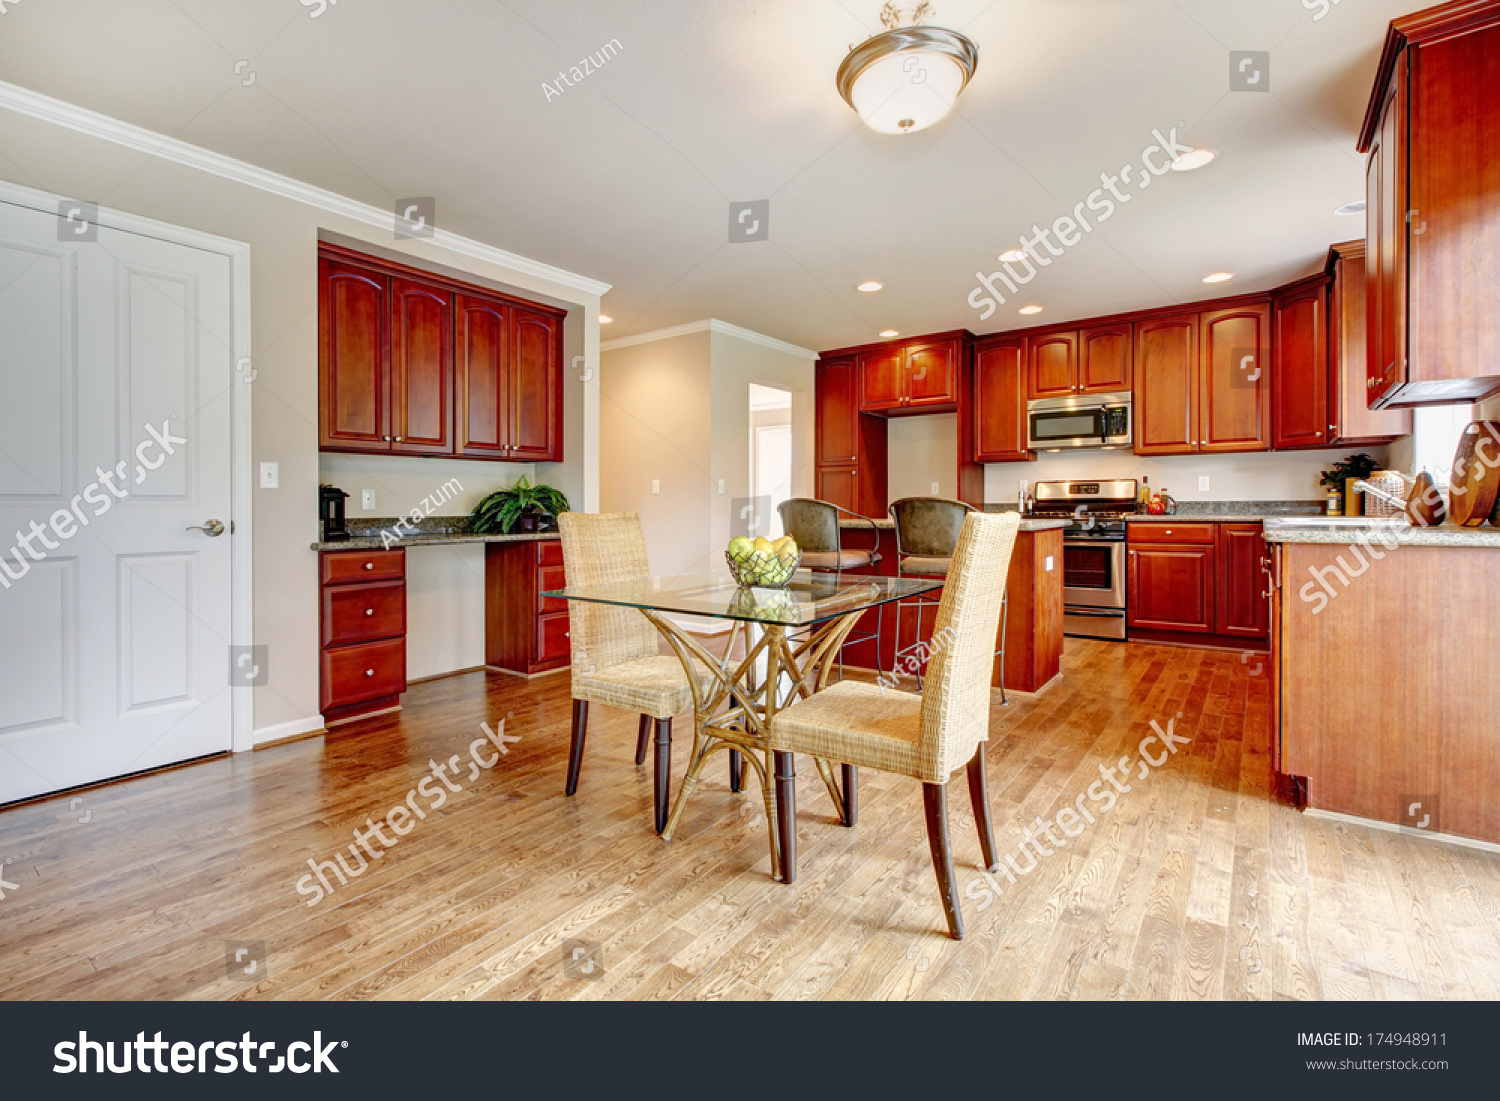 Hardwood Floor Big Kitchen Room Cherry Stock Photo Edit Now 174948911